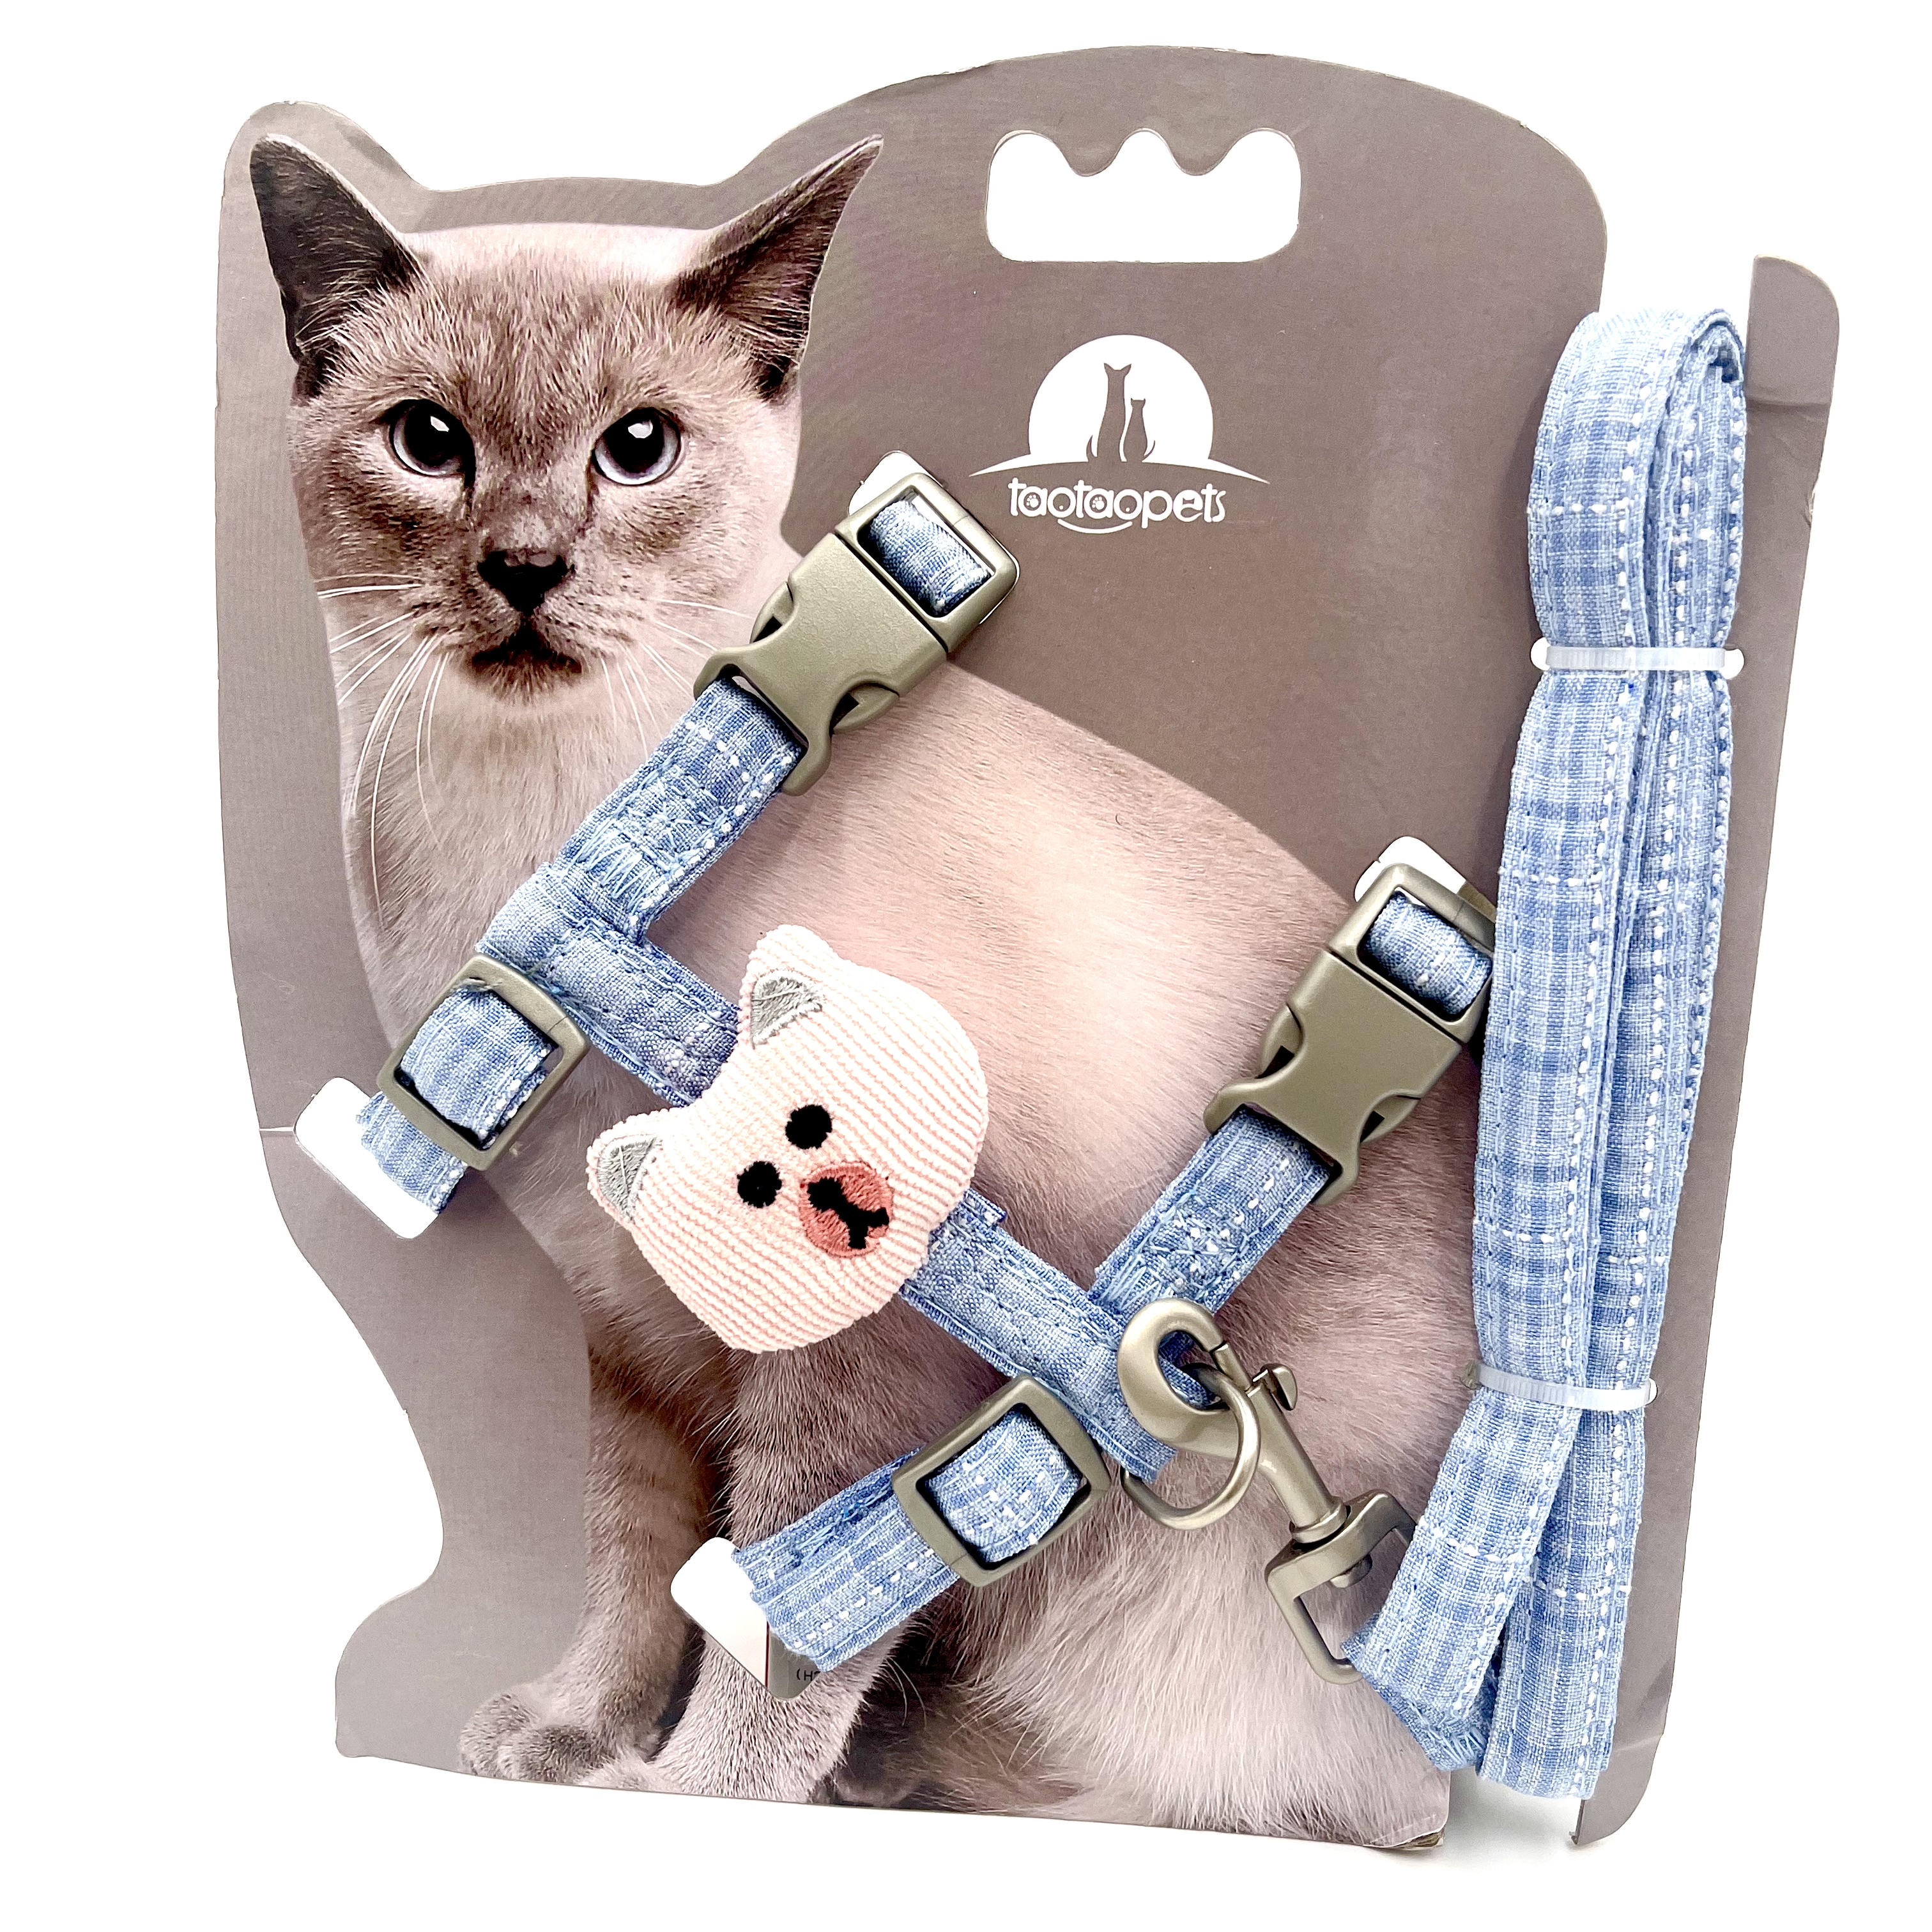 Fashionable I-Shape Belt with Cat Face